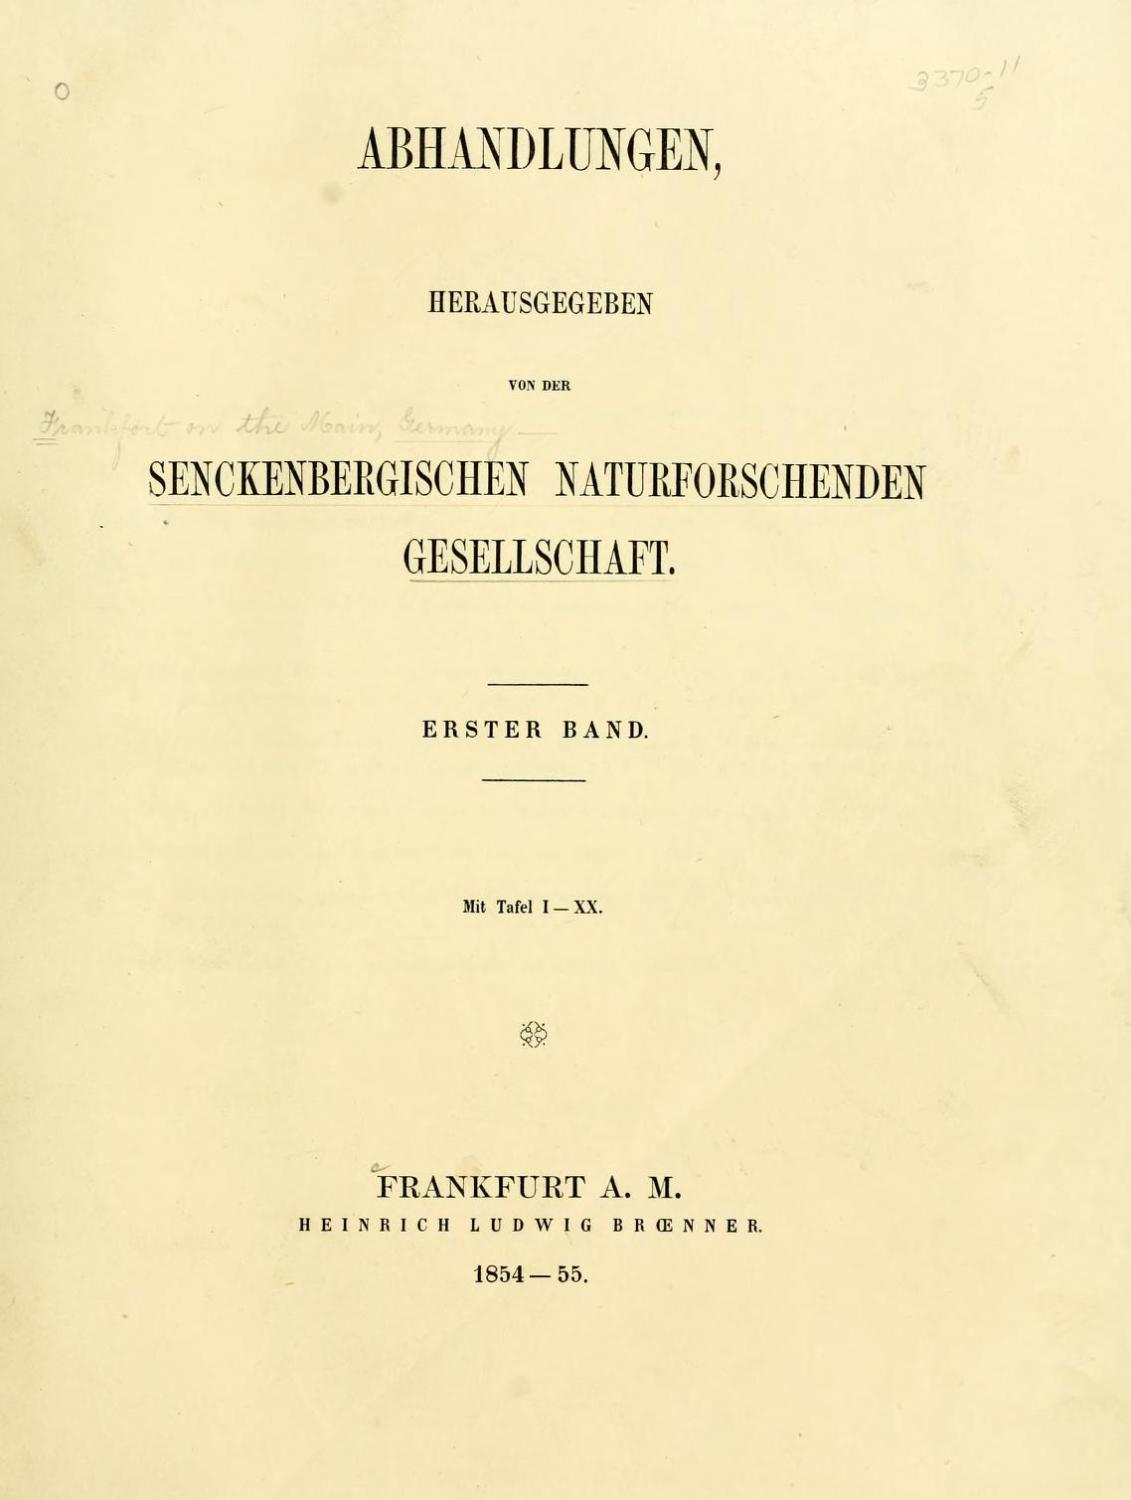 Hier veröffetlichte Fresenius seine Forschungsergebnisse (Museum of Comparative Zoology, Ernst Mayr Library, Harvard University)